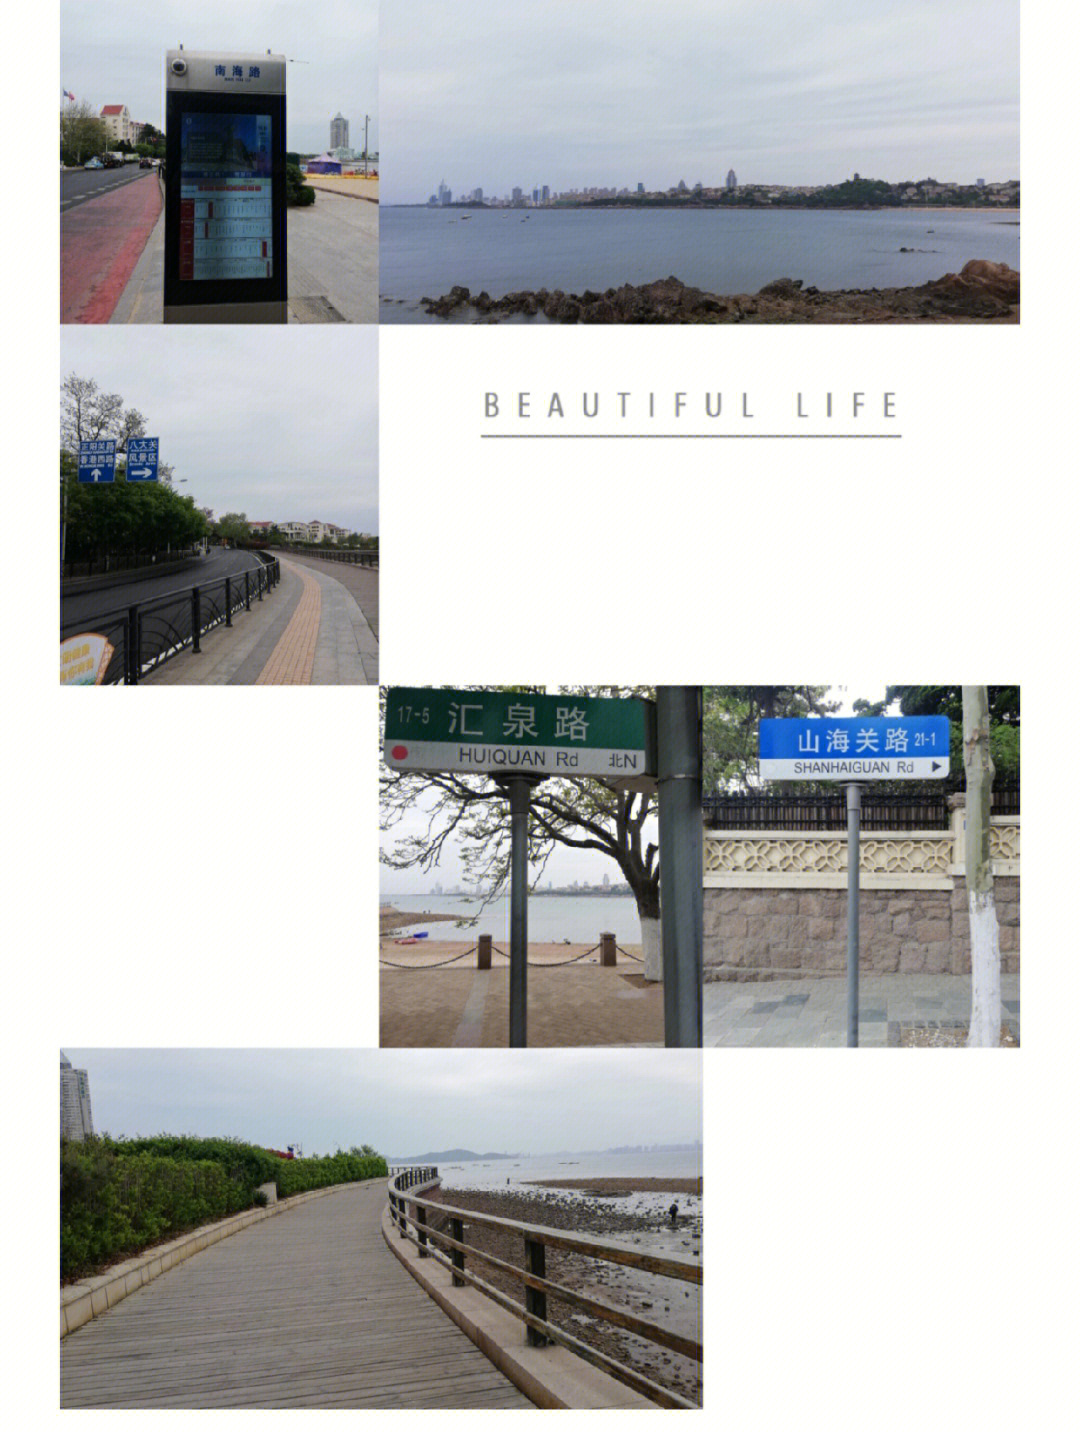 青岛八大关步行路线图图片